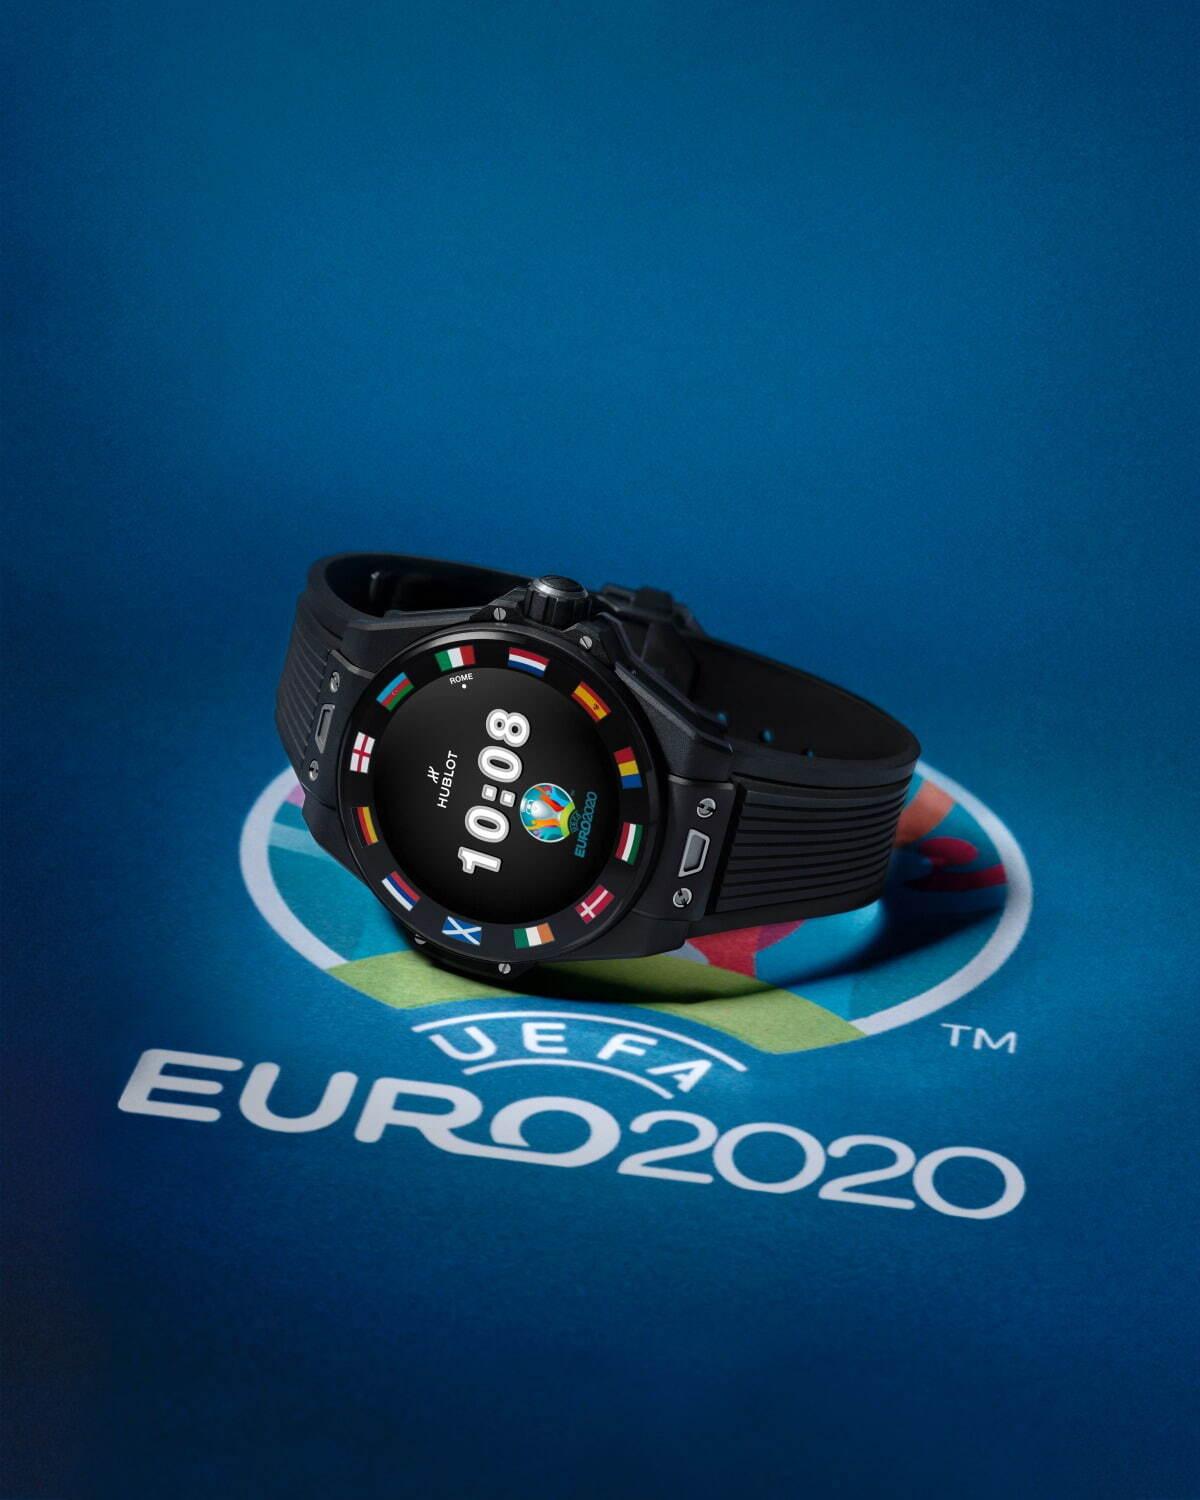 ウブロの腕時計「ビッグ・バン」新作、サッカー専用アプリでUEFA欧州選手権の試合状況リアルタイム受信 コピー